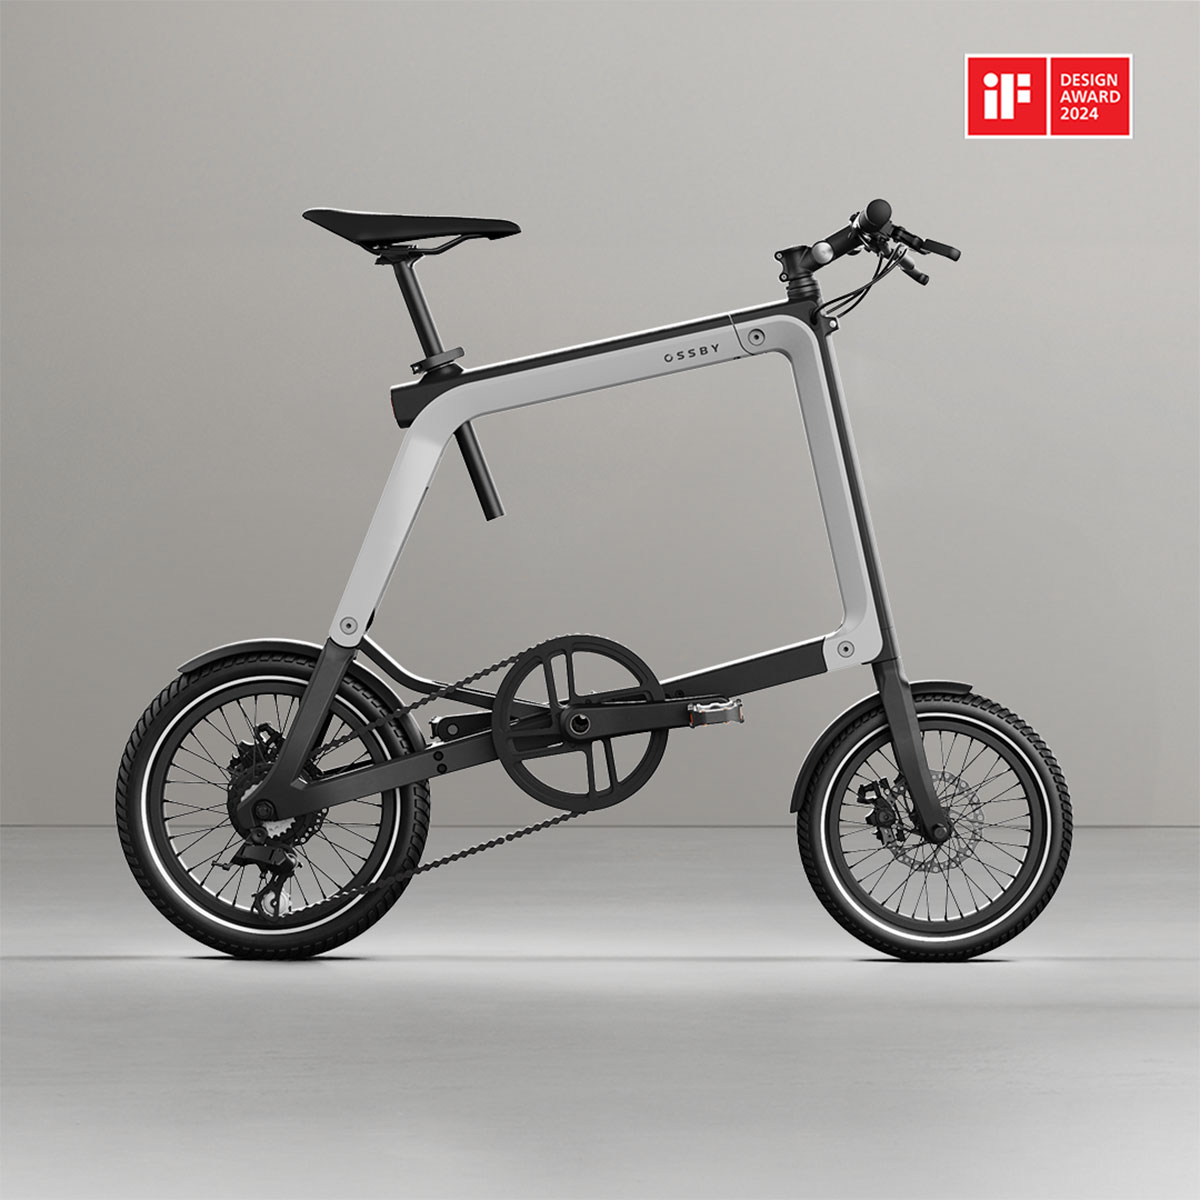 La Ossby GEO, una bicicleta eléctrica plegable de diseño único, se lleva un prestigioso premio IF Design